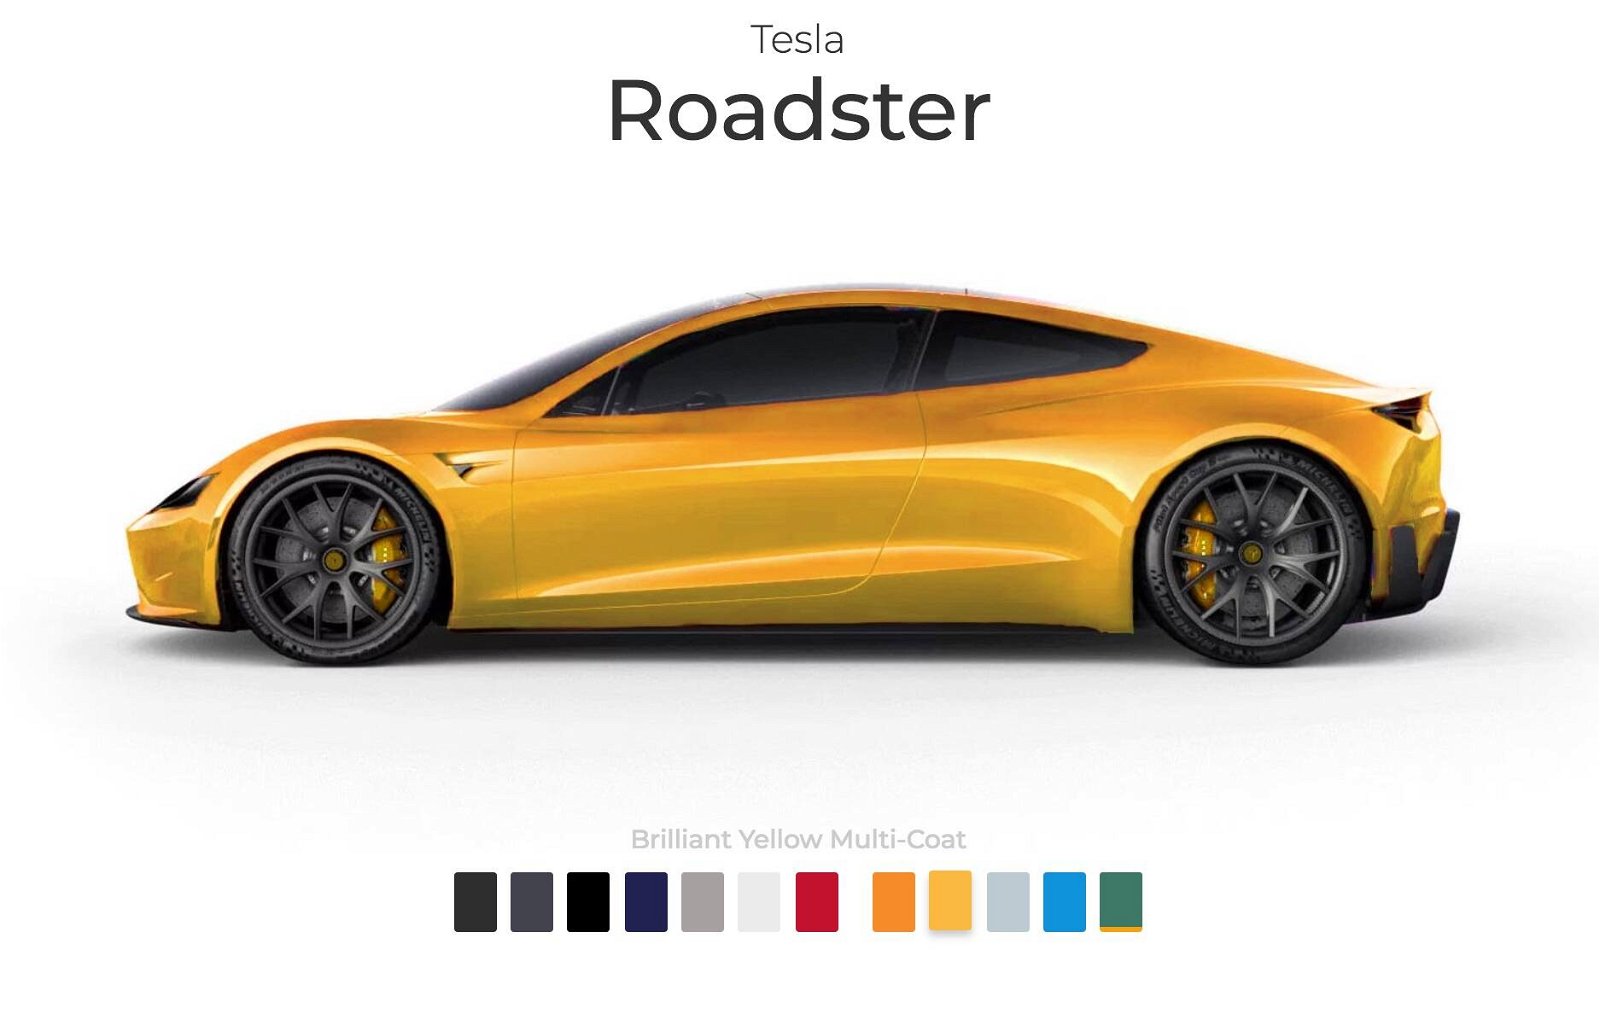 Immagine di Tesla Roadster avrà un'ampia scelta di colori al pari delle più famose supercar